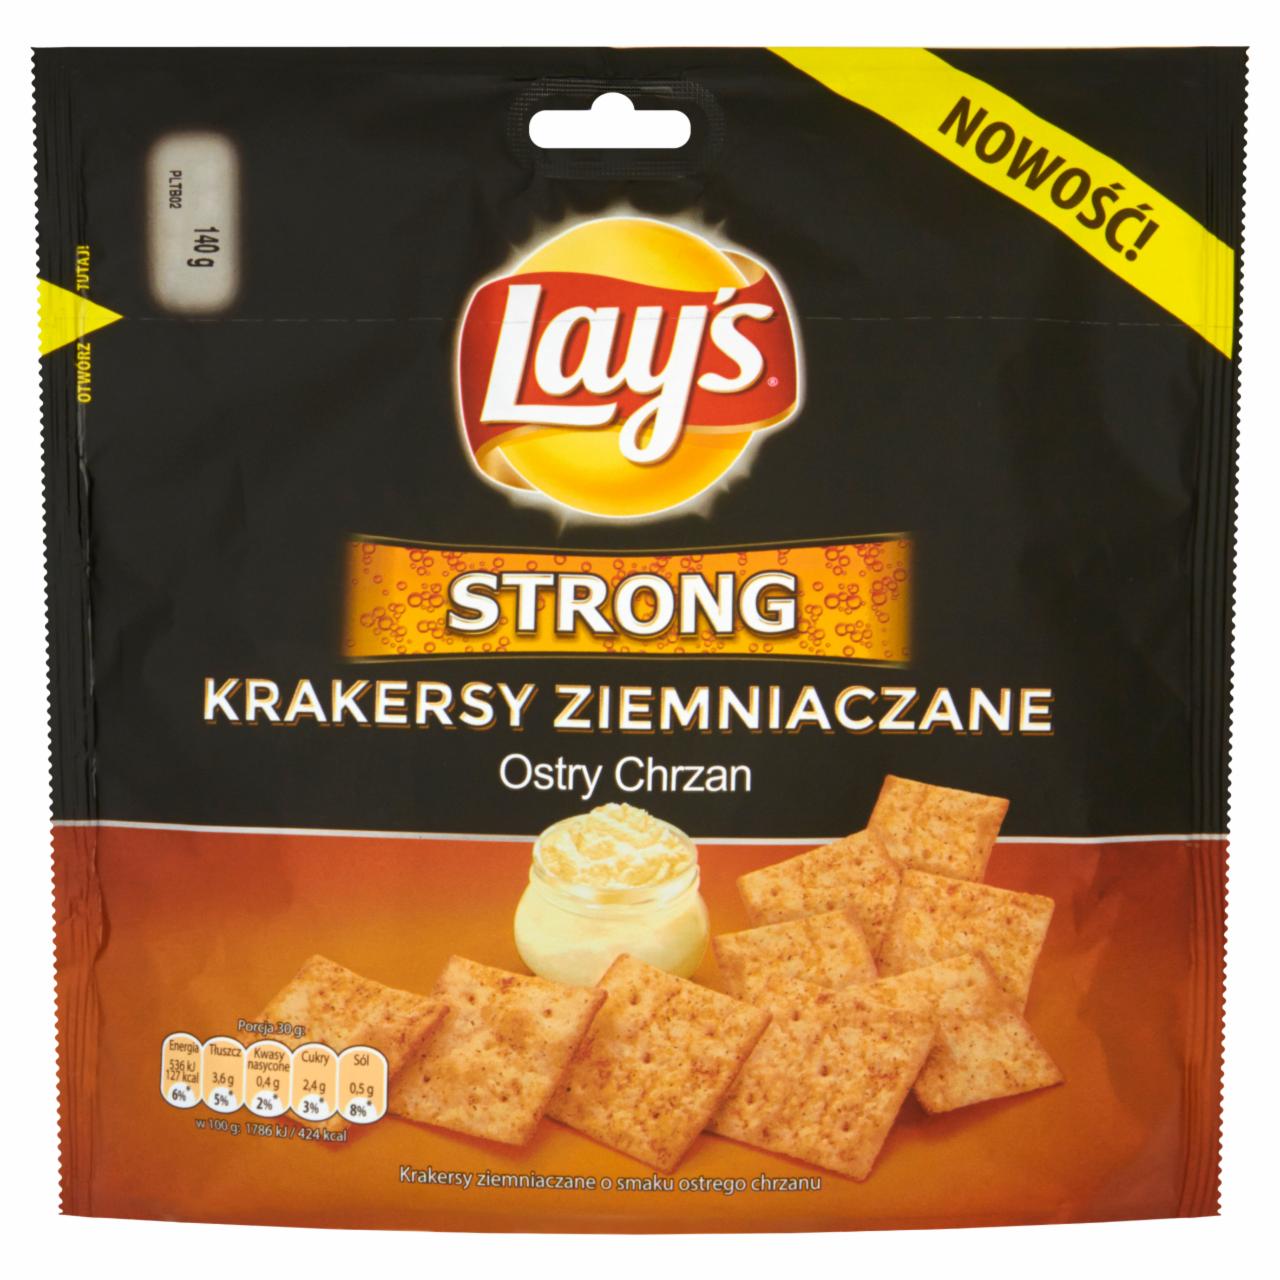 Zdjęcia - Lay's Strong Ostry Chrzan Krakersy ziemniaczane 140 g